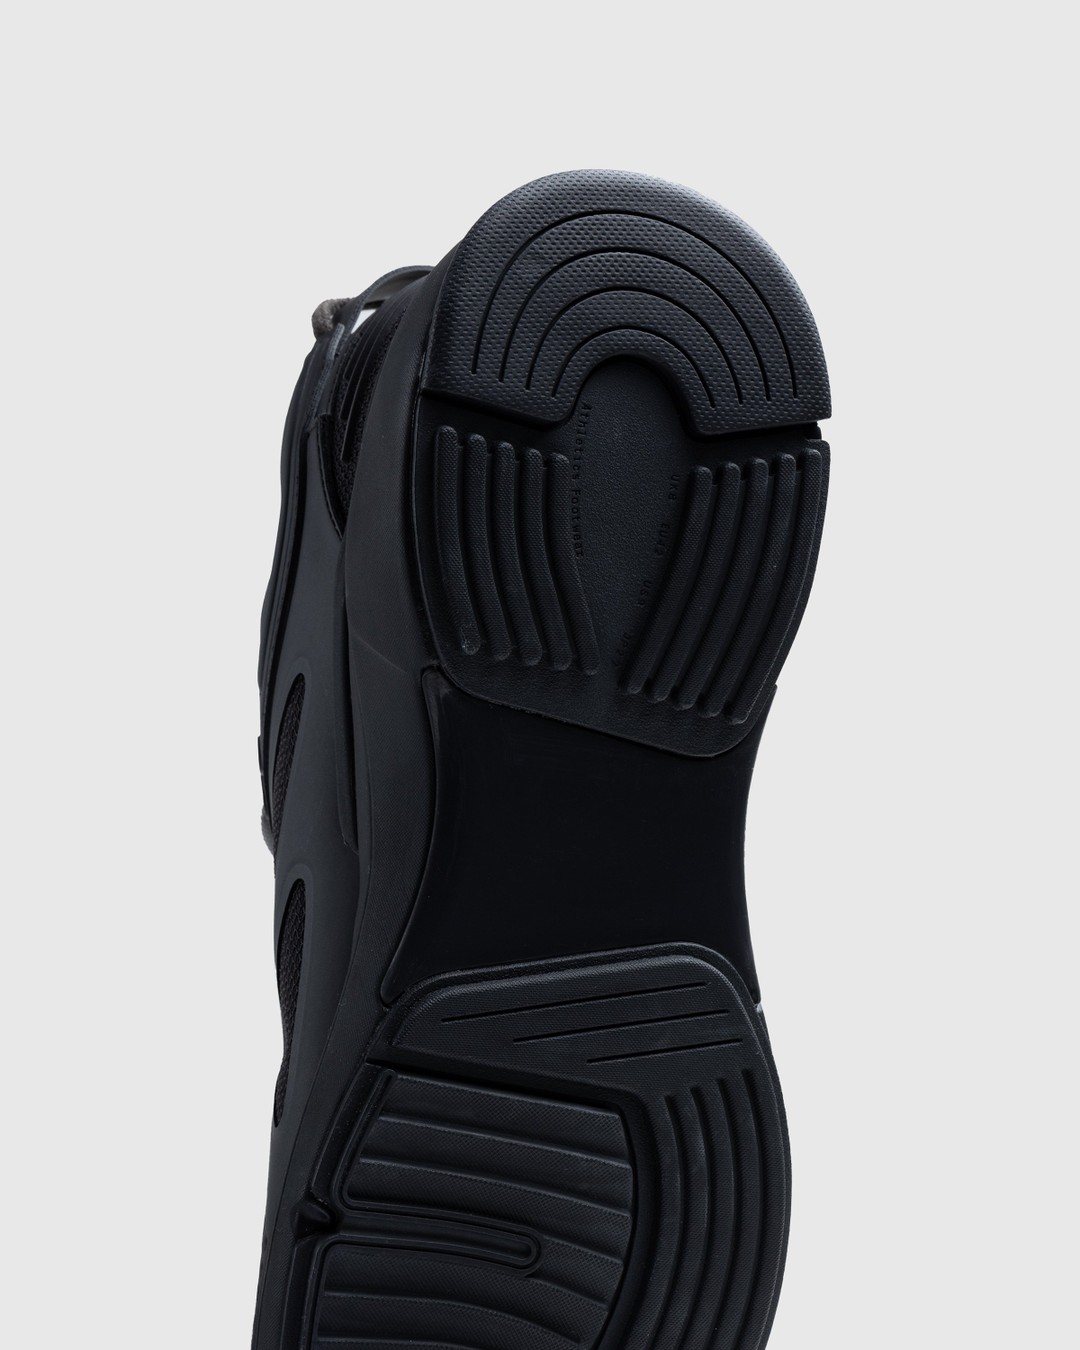 Athletics Footwear – One.2 Black - Low Top Sneakers - Black - Image 5